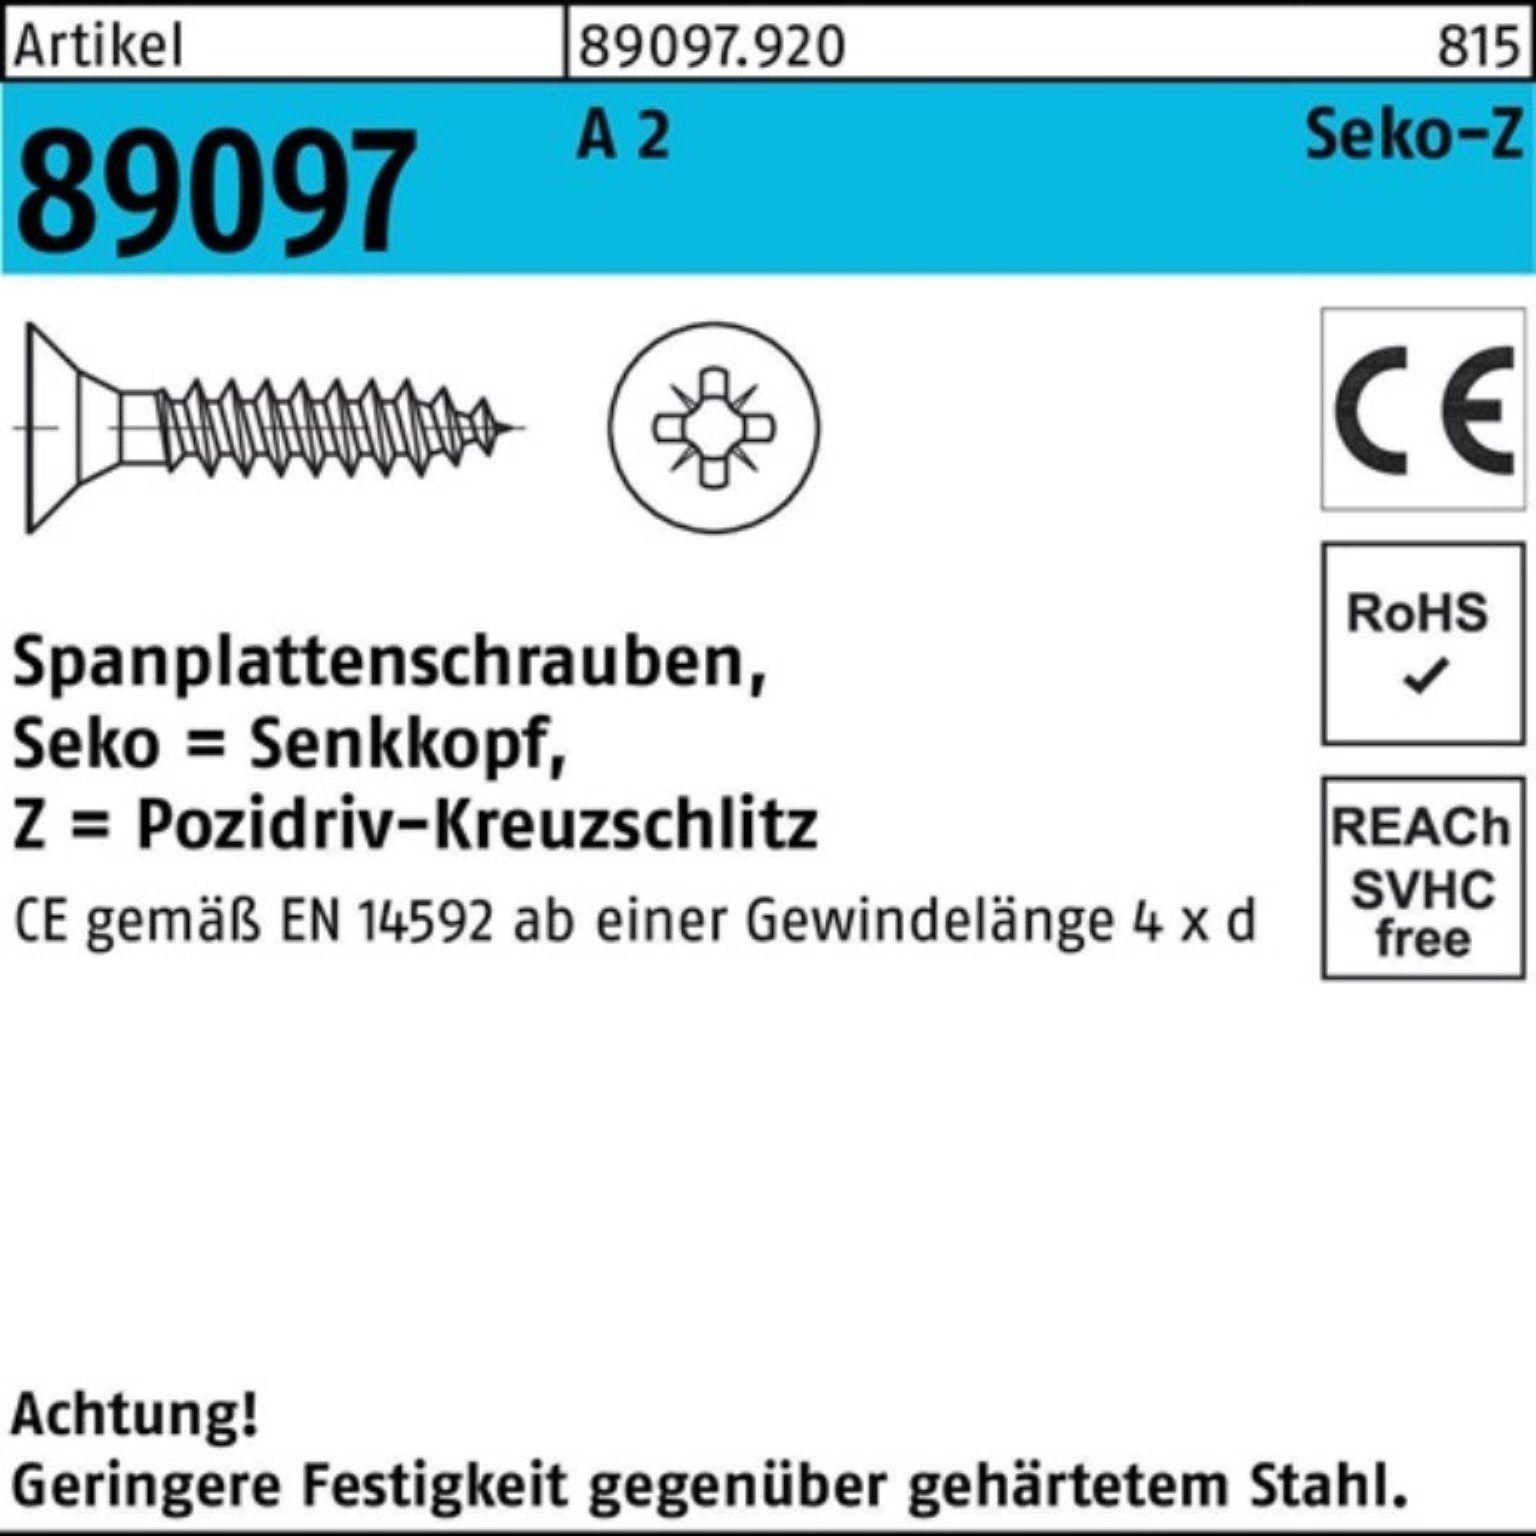 89097 Reyher Spanplattenschraube PZ 30-Z A R 3,5x 2 Pack Spanplattenschraube VG SEKO St 200er 200